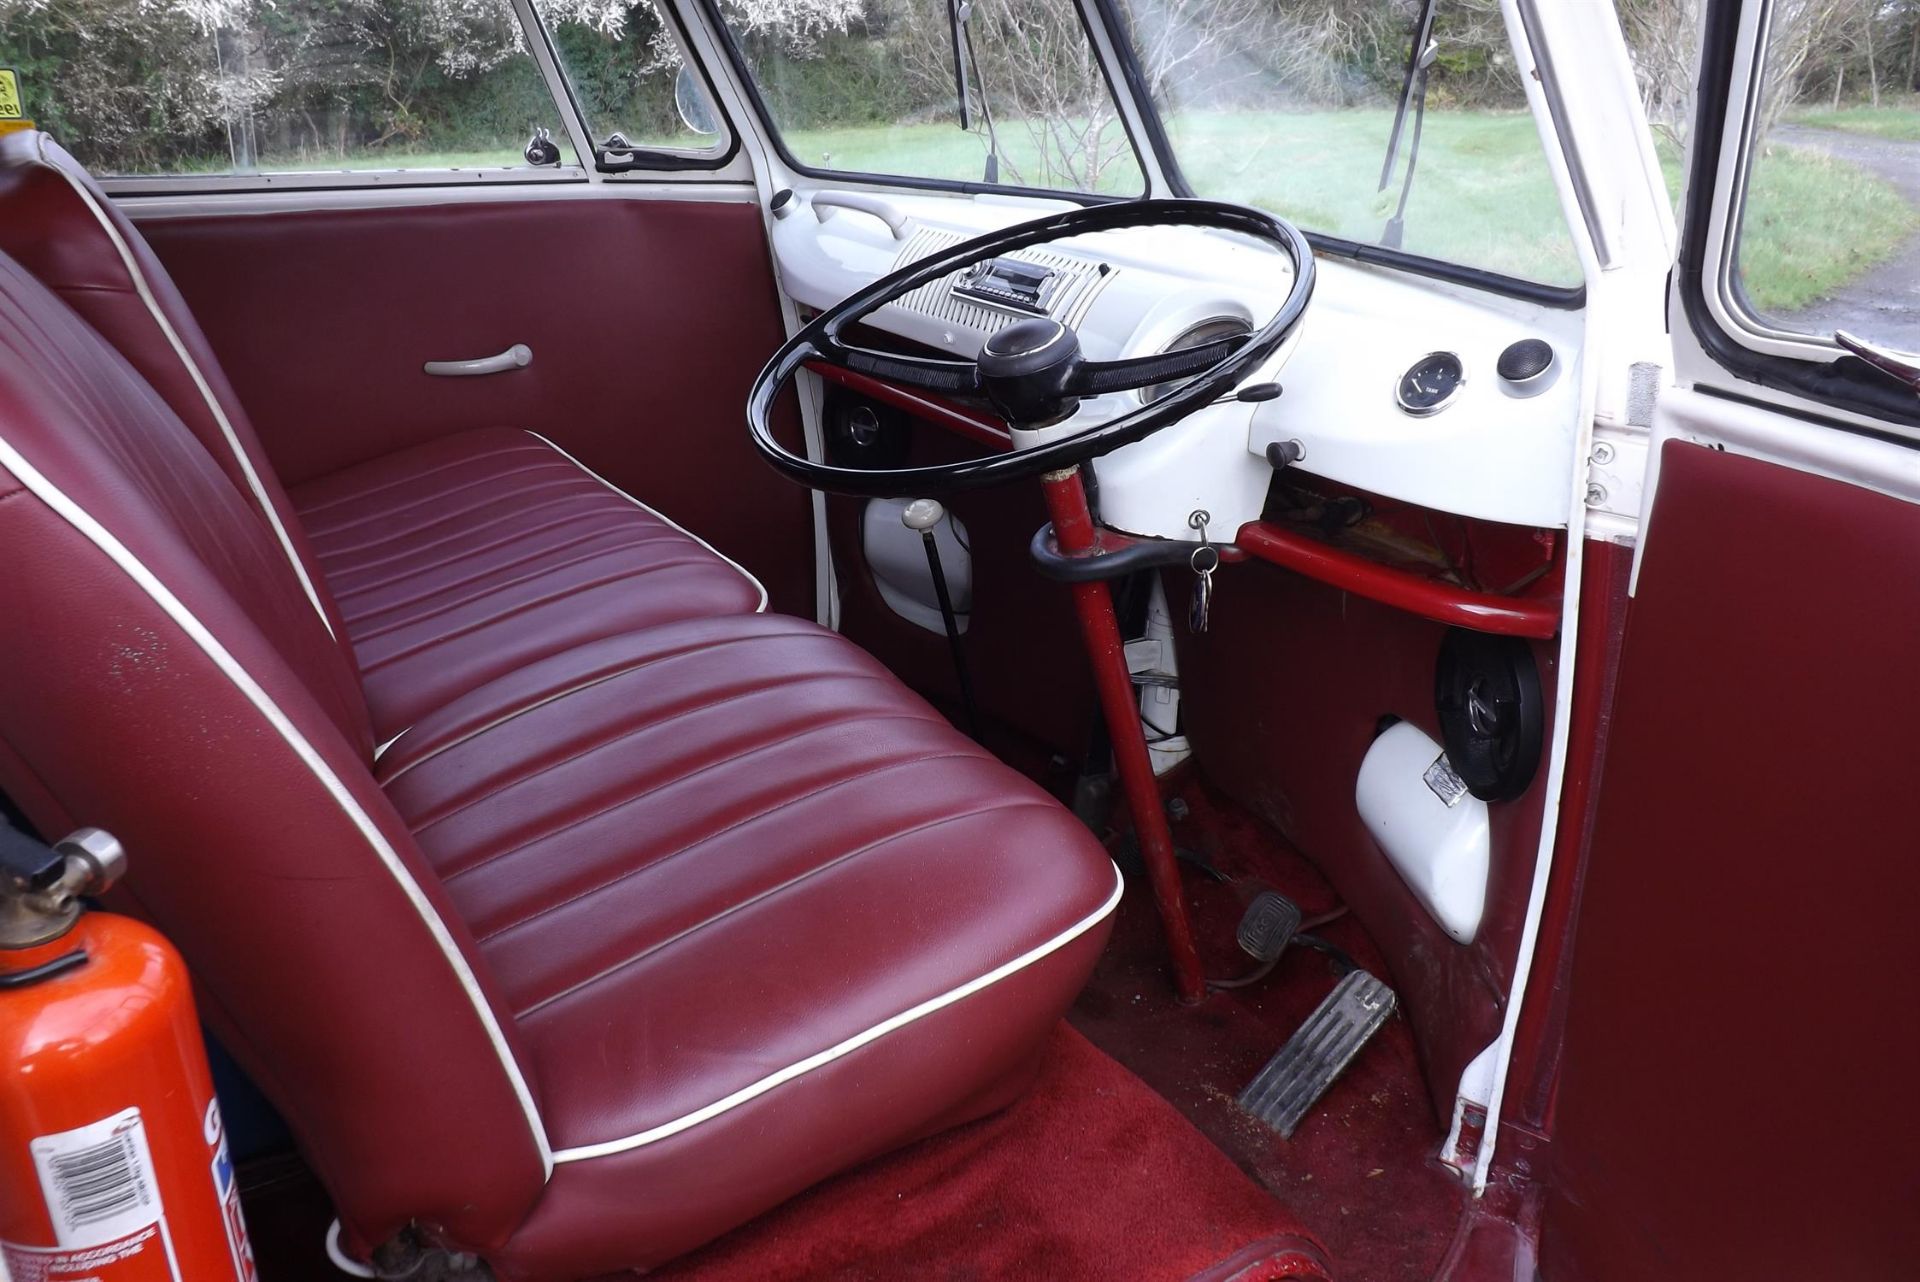 1963 Volkswagen Type 2 (T1) 'Spilt-Screen' Microbus - Image 2 of 10